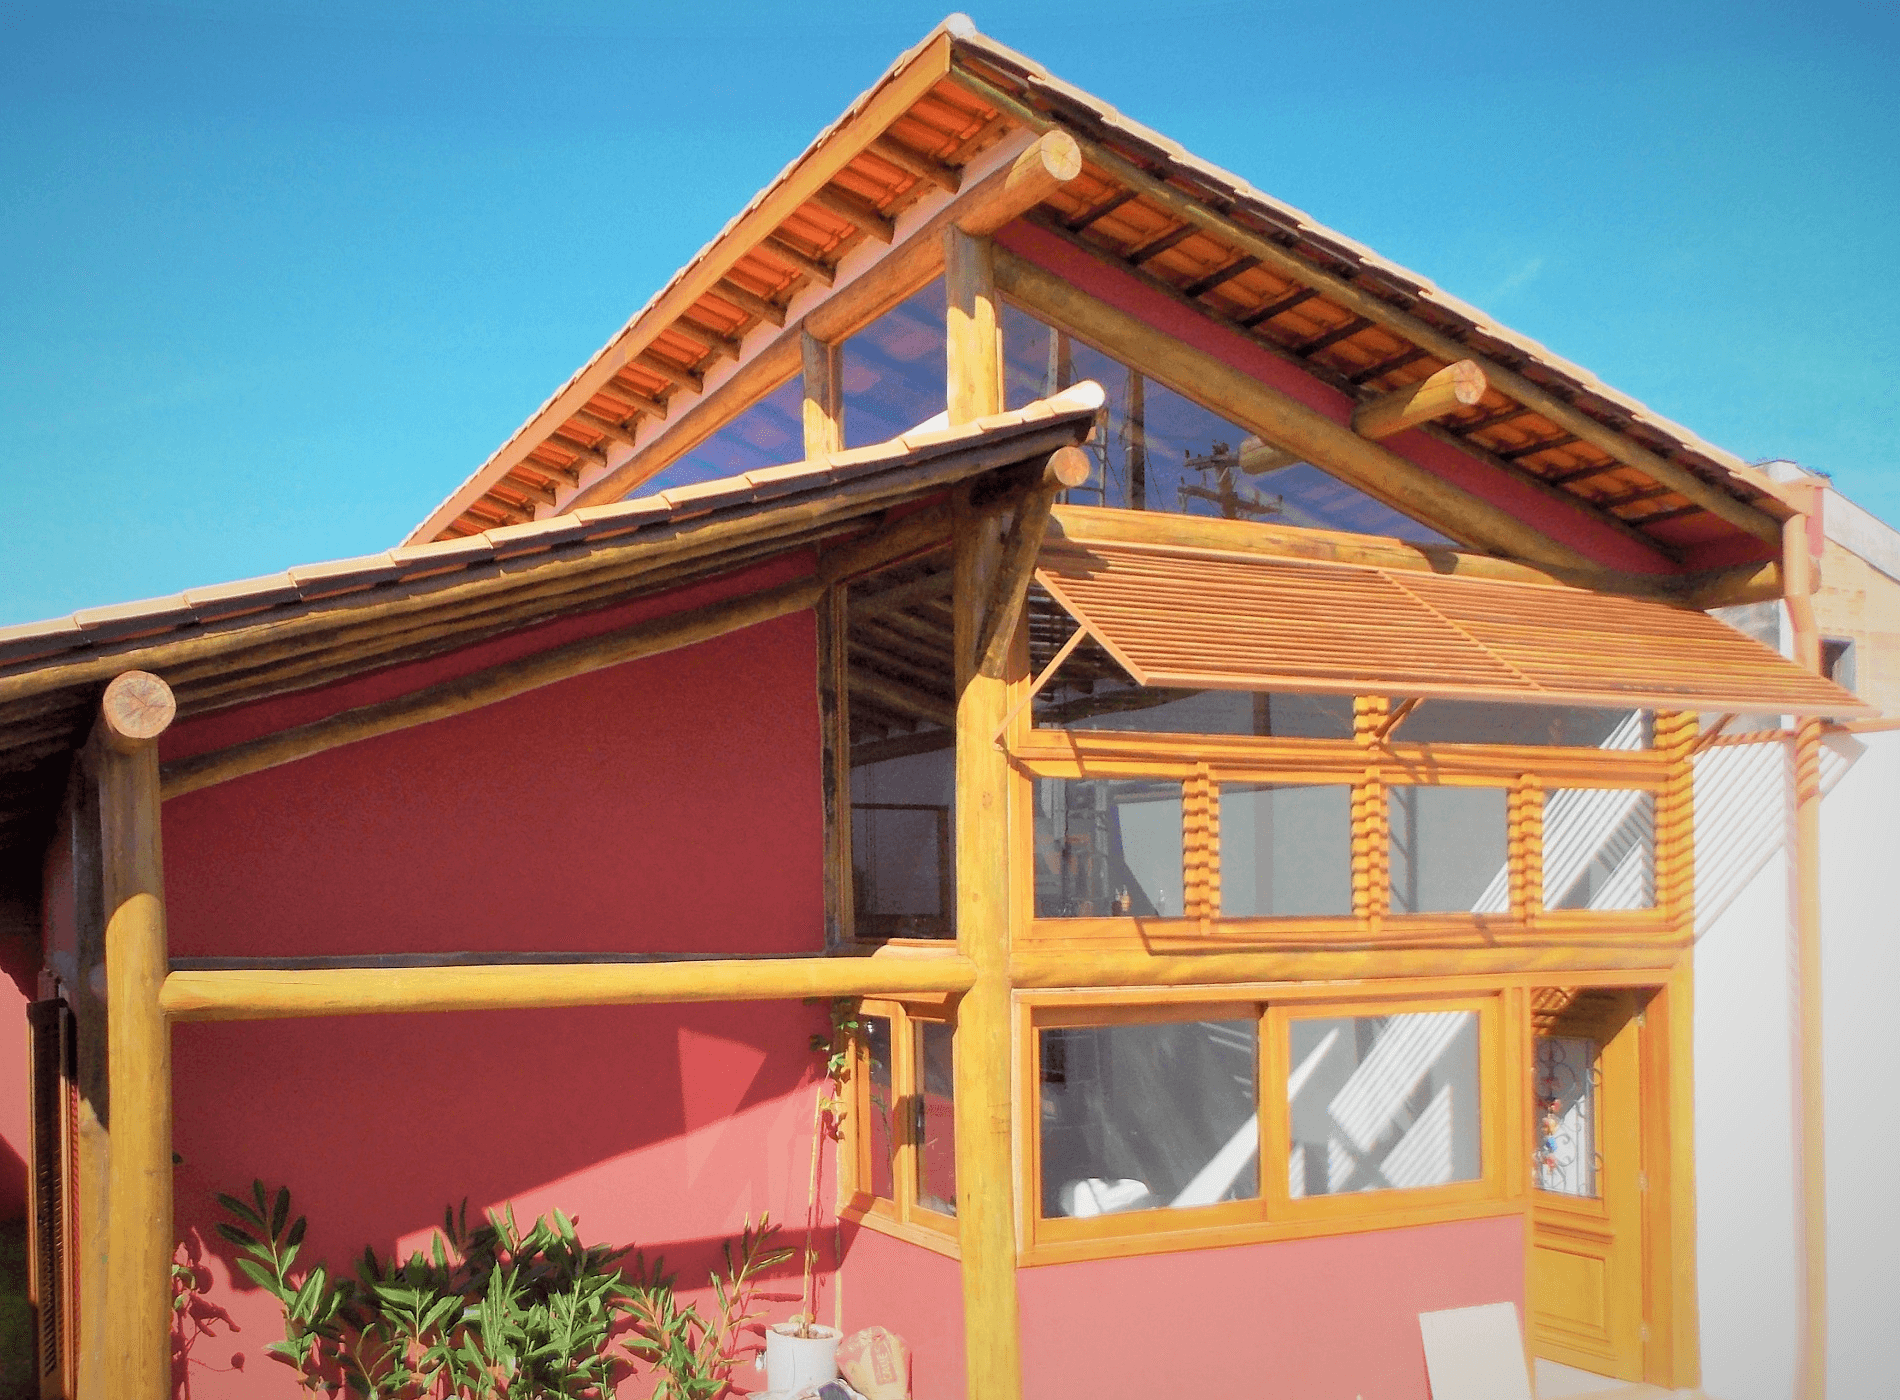 Na Fachada Principal a Casa com Estrutura de Madeira recebeu esquadrias de madeira e muito vidro. Campinas – S.P.